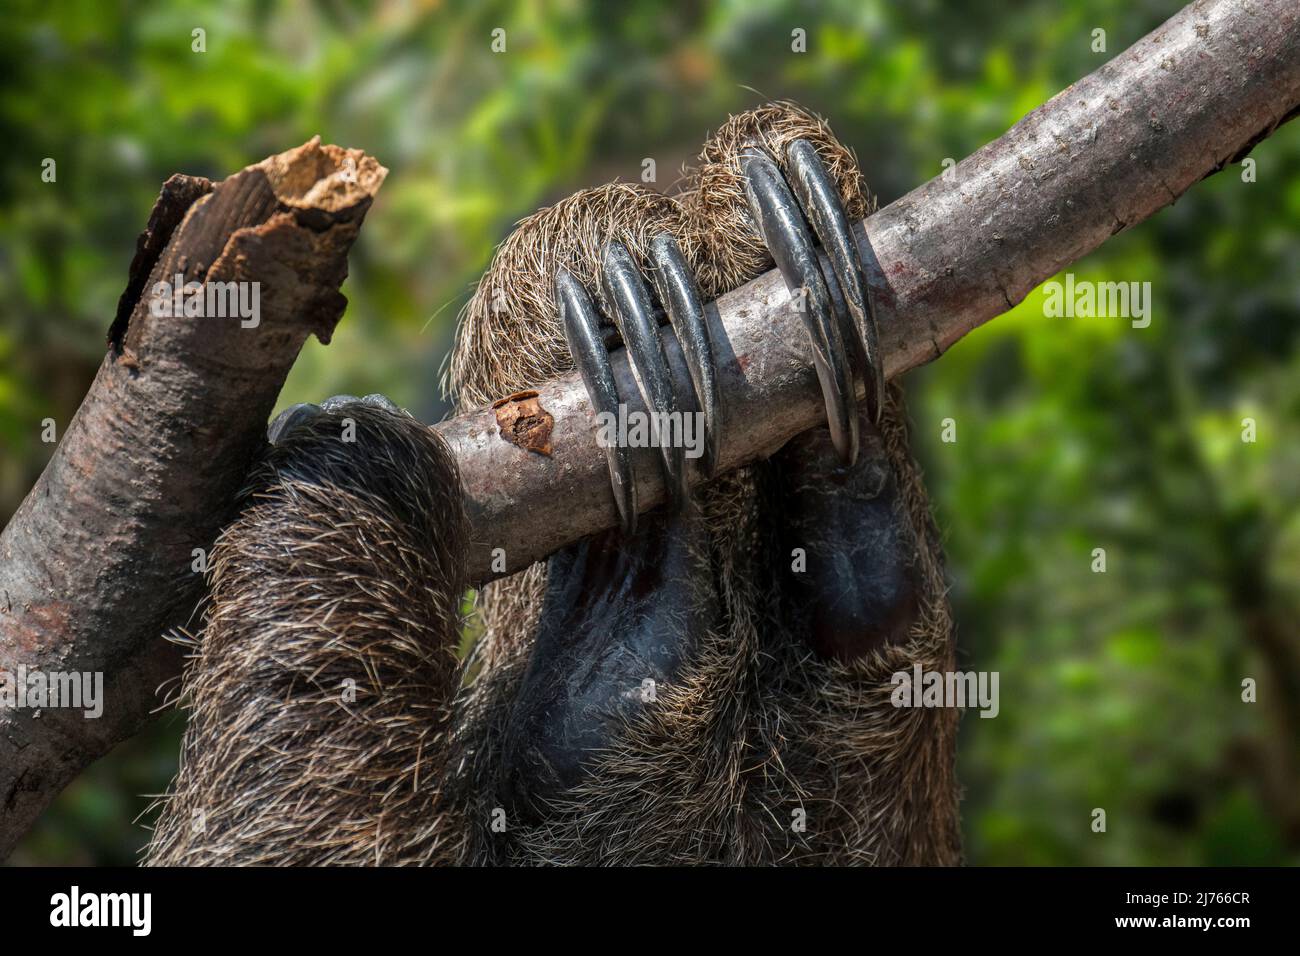 La sloth à deux doigts de Linnaeus / la sloth à deux doigts de sud / la sloth à deux doigts de Linne (Choloepus didactylus / Bradypus didactylus) gros plan des griffes Banque D'Images